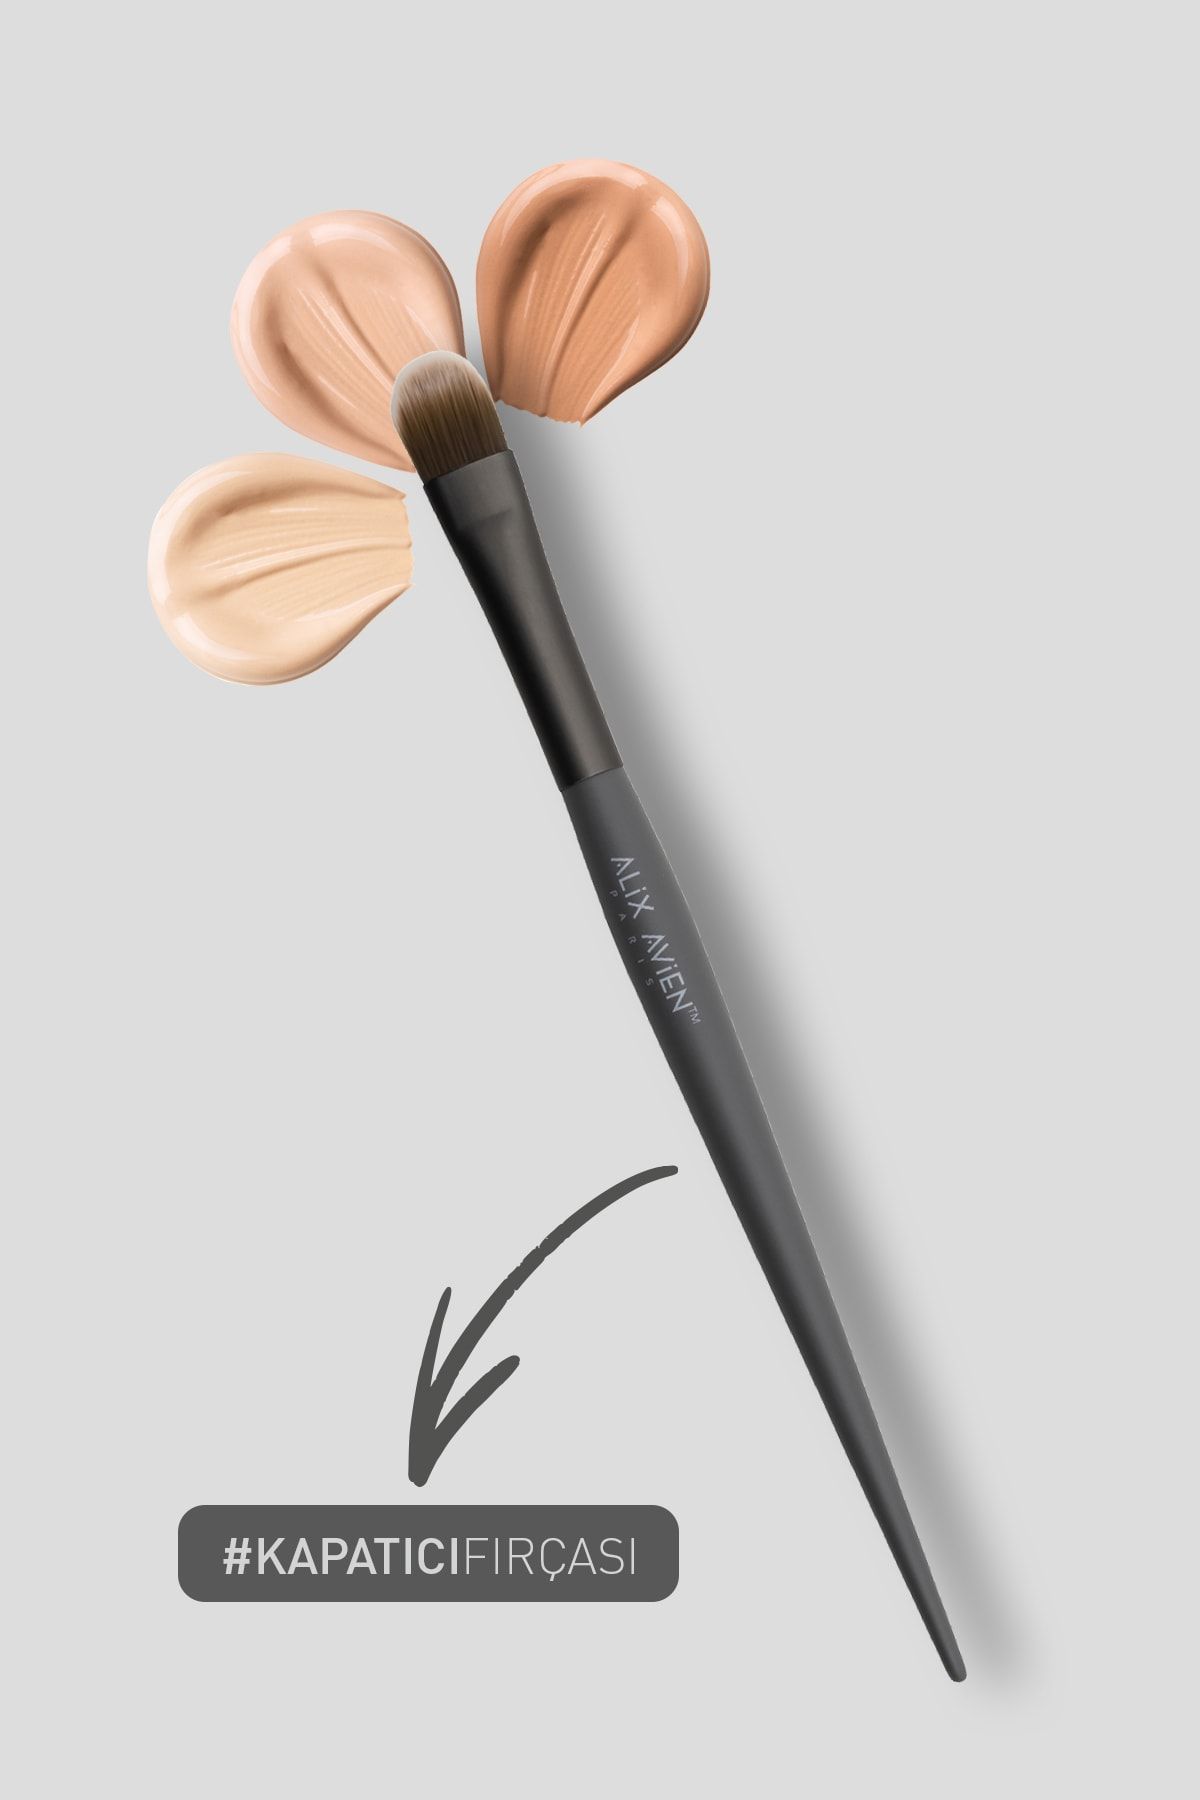 Alix Avien Kapatıcı Fırçası - Concealer Brush